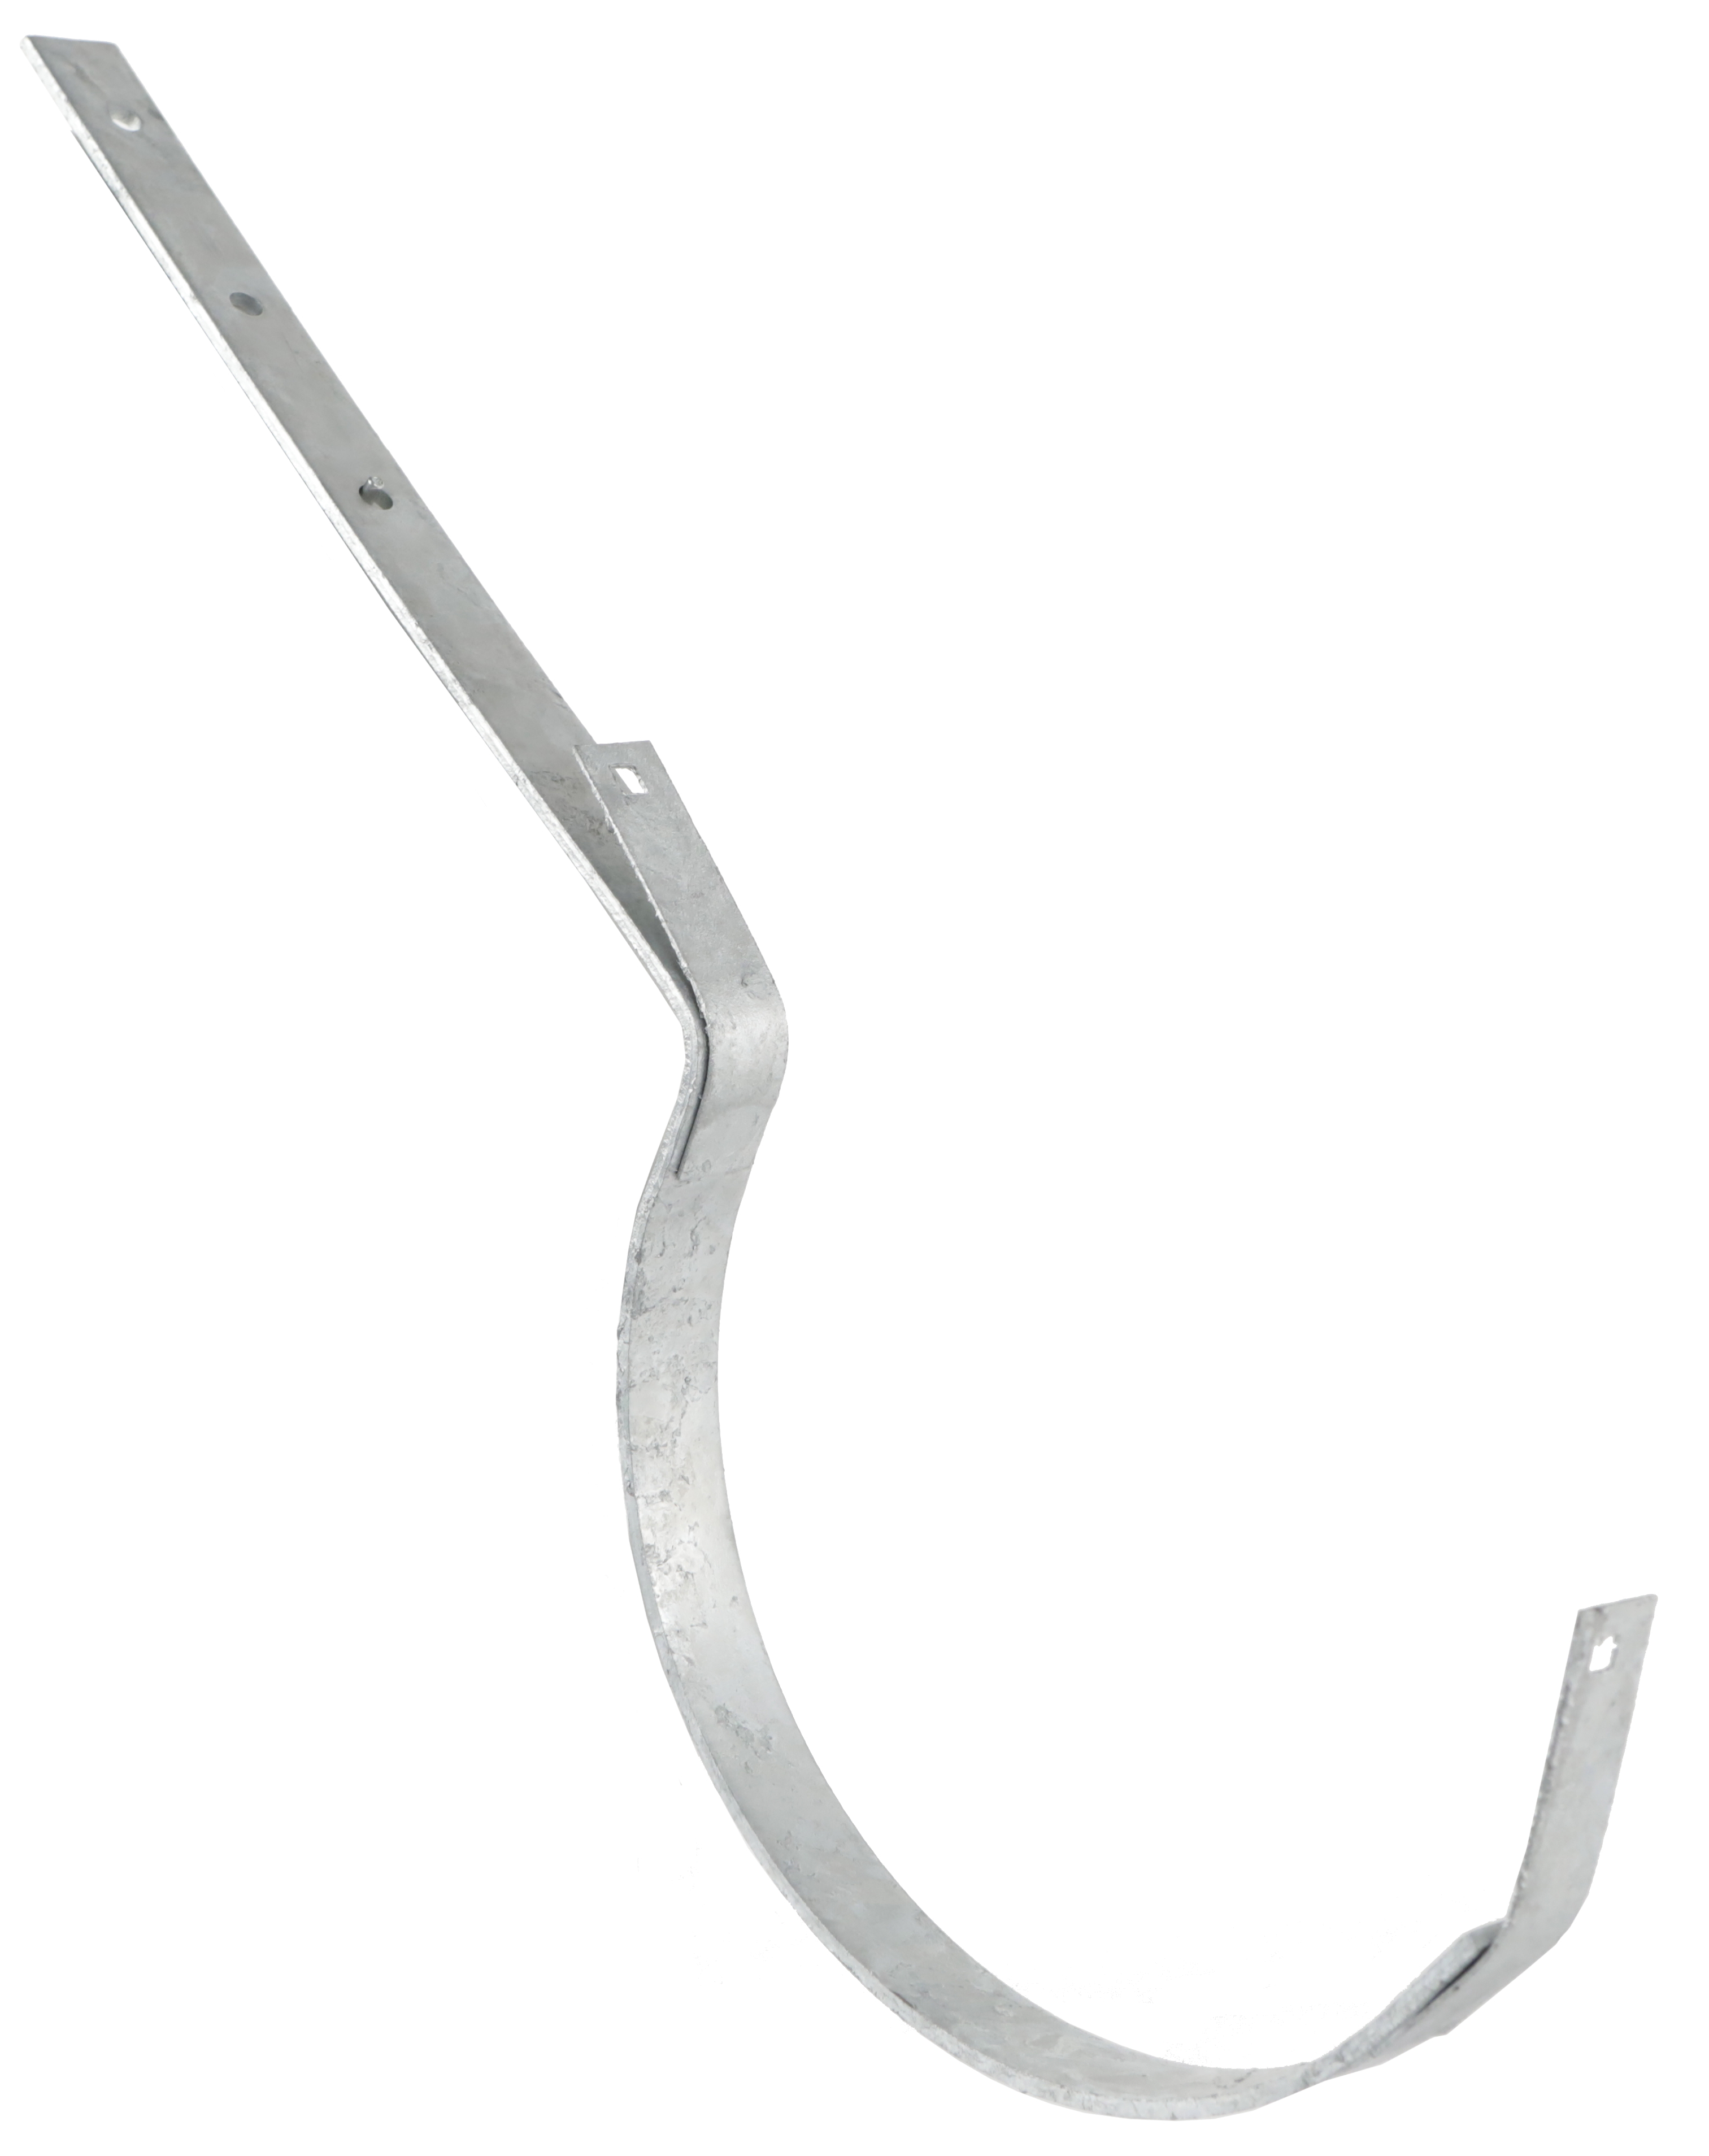 Gutter hook Montpellier deviation 33, 50 cm galvanized steel rod